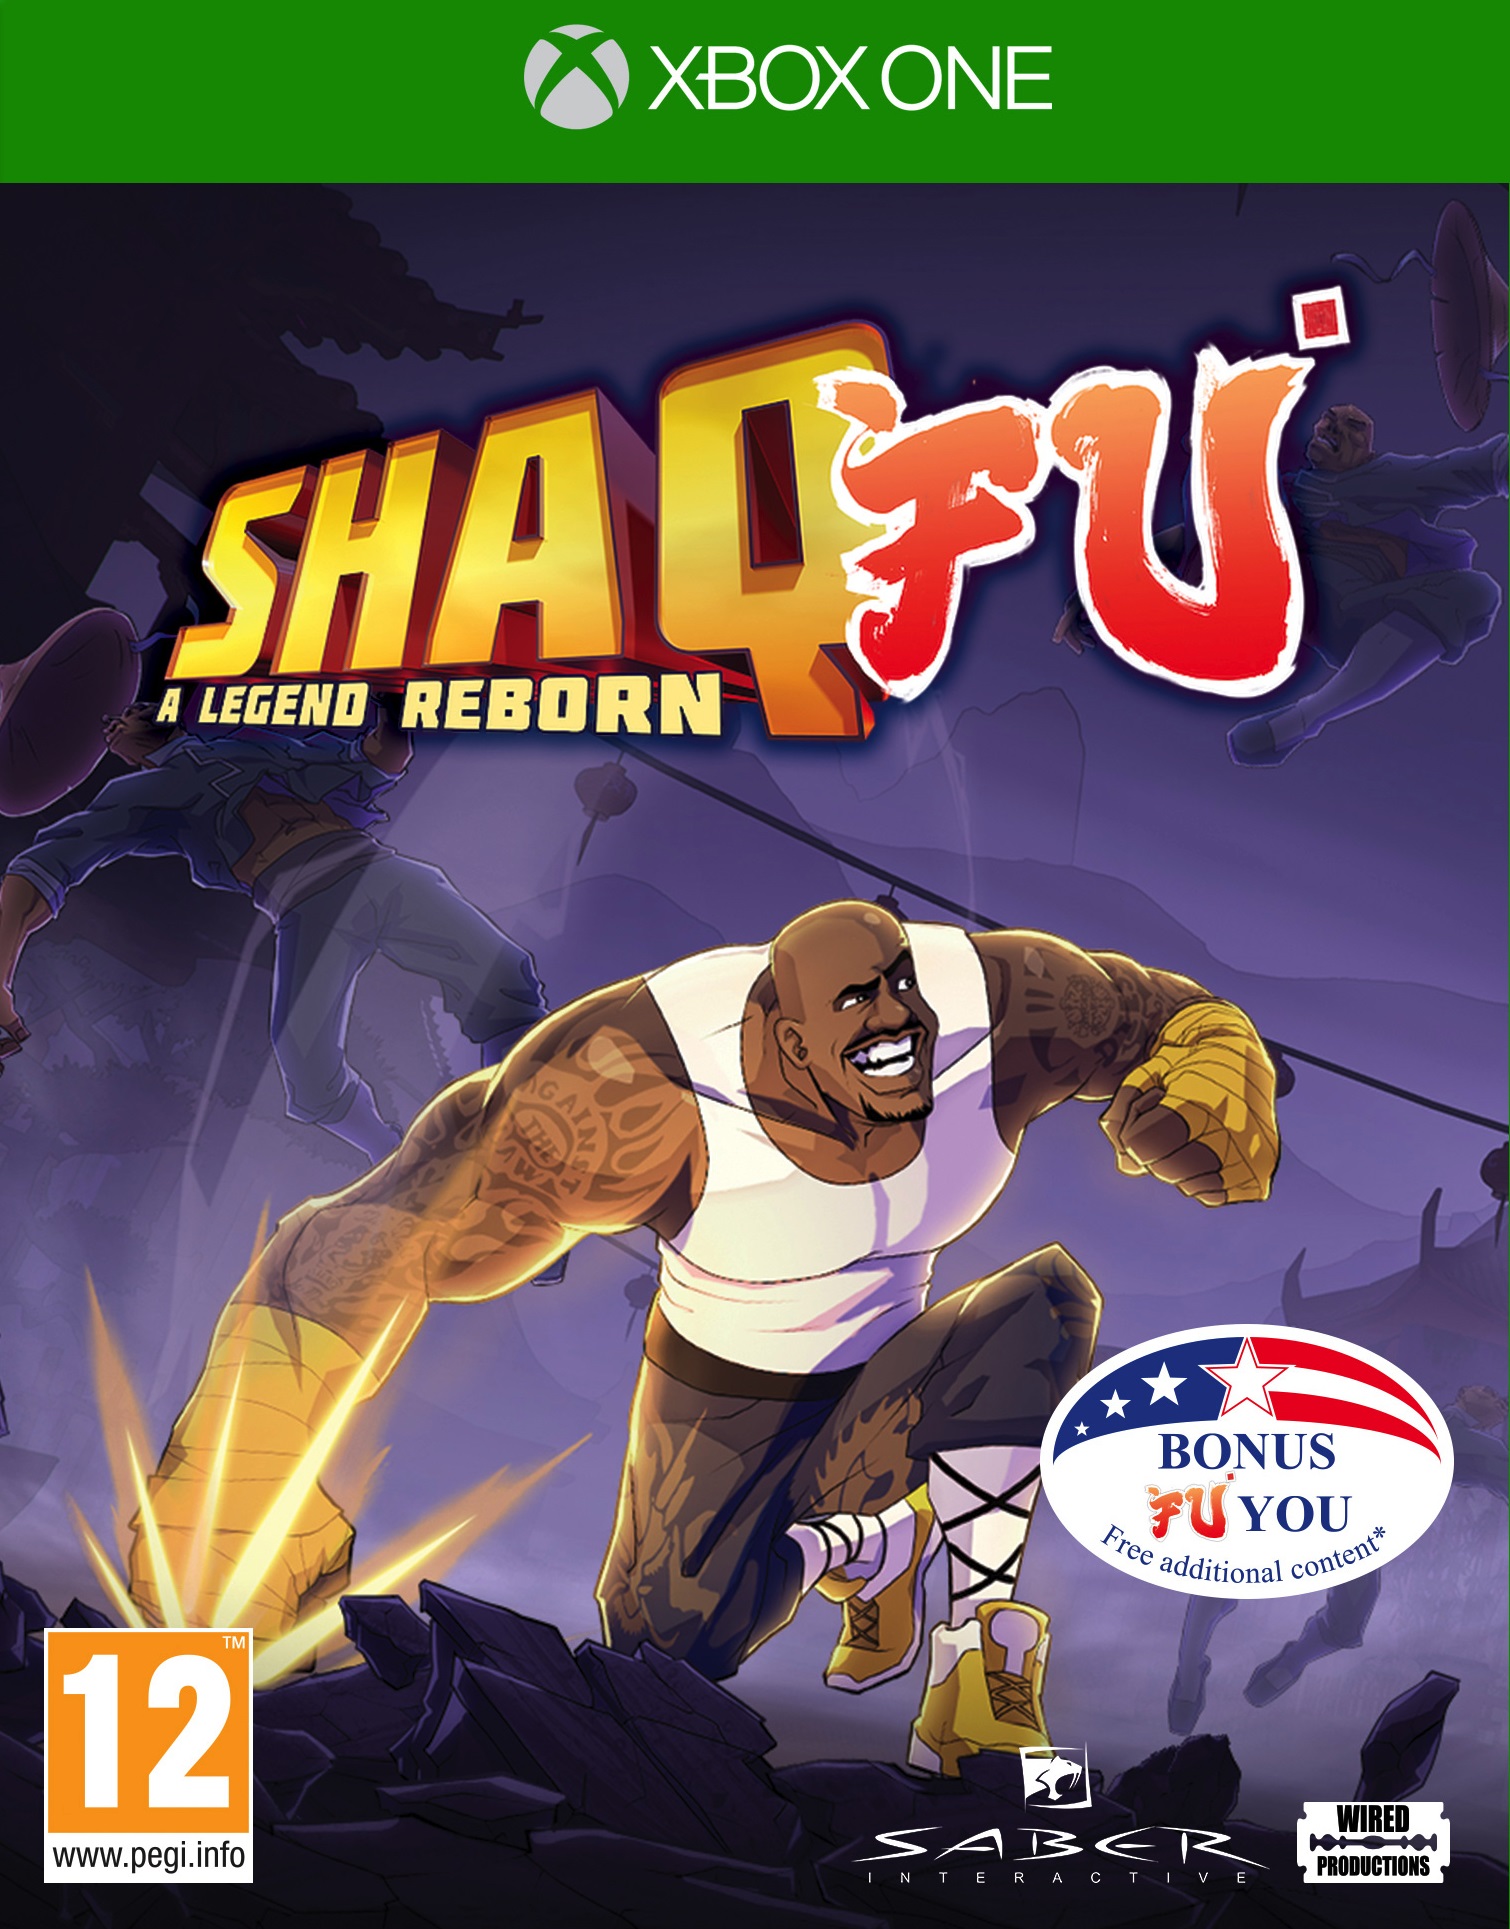 jaquette du jeu vidéo Shaq-Fu: A Legend Reborn